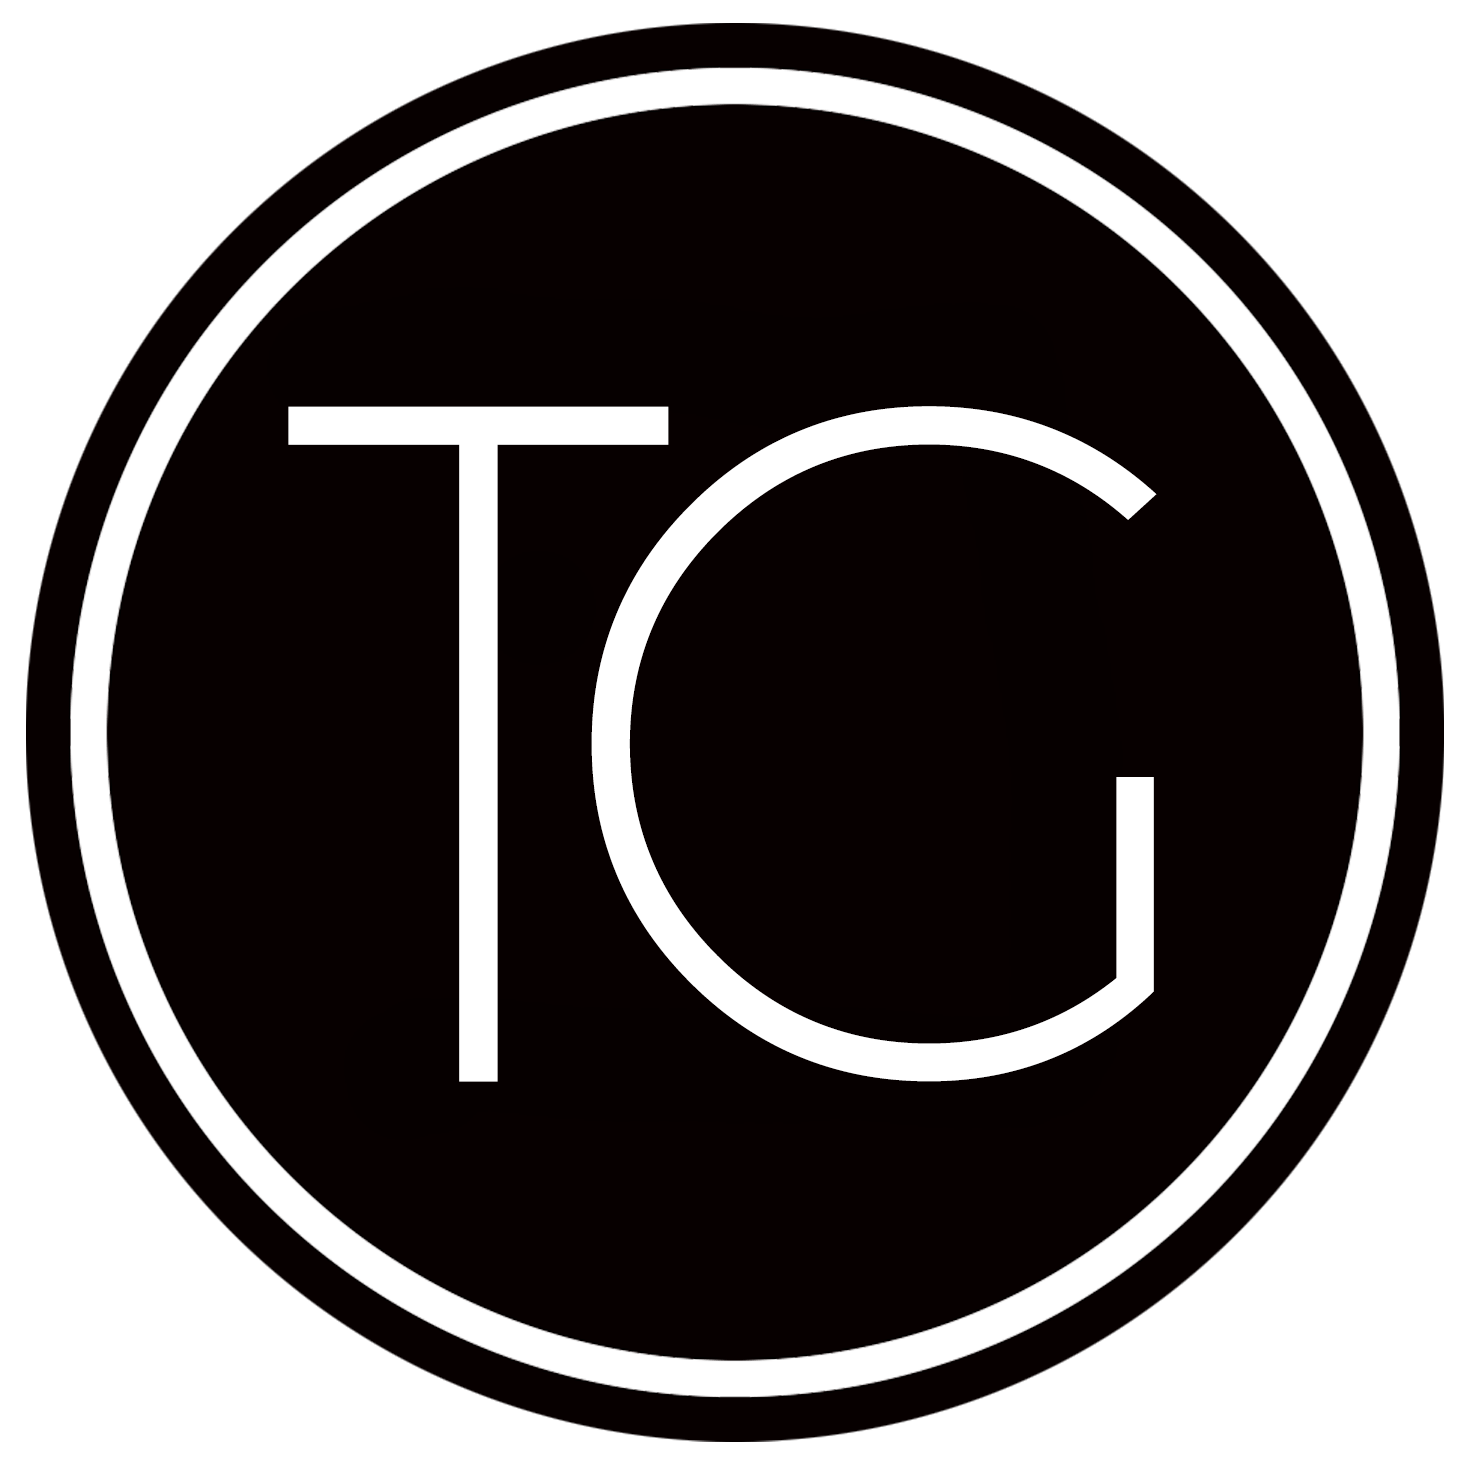 TG Logo - Tg logo png 6 » PNG Image